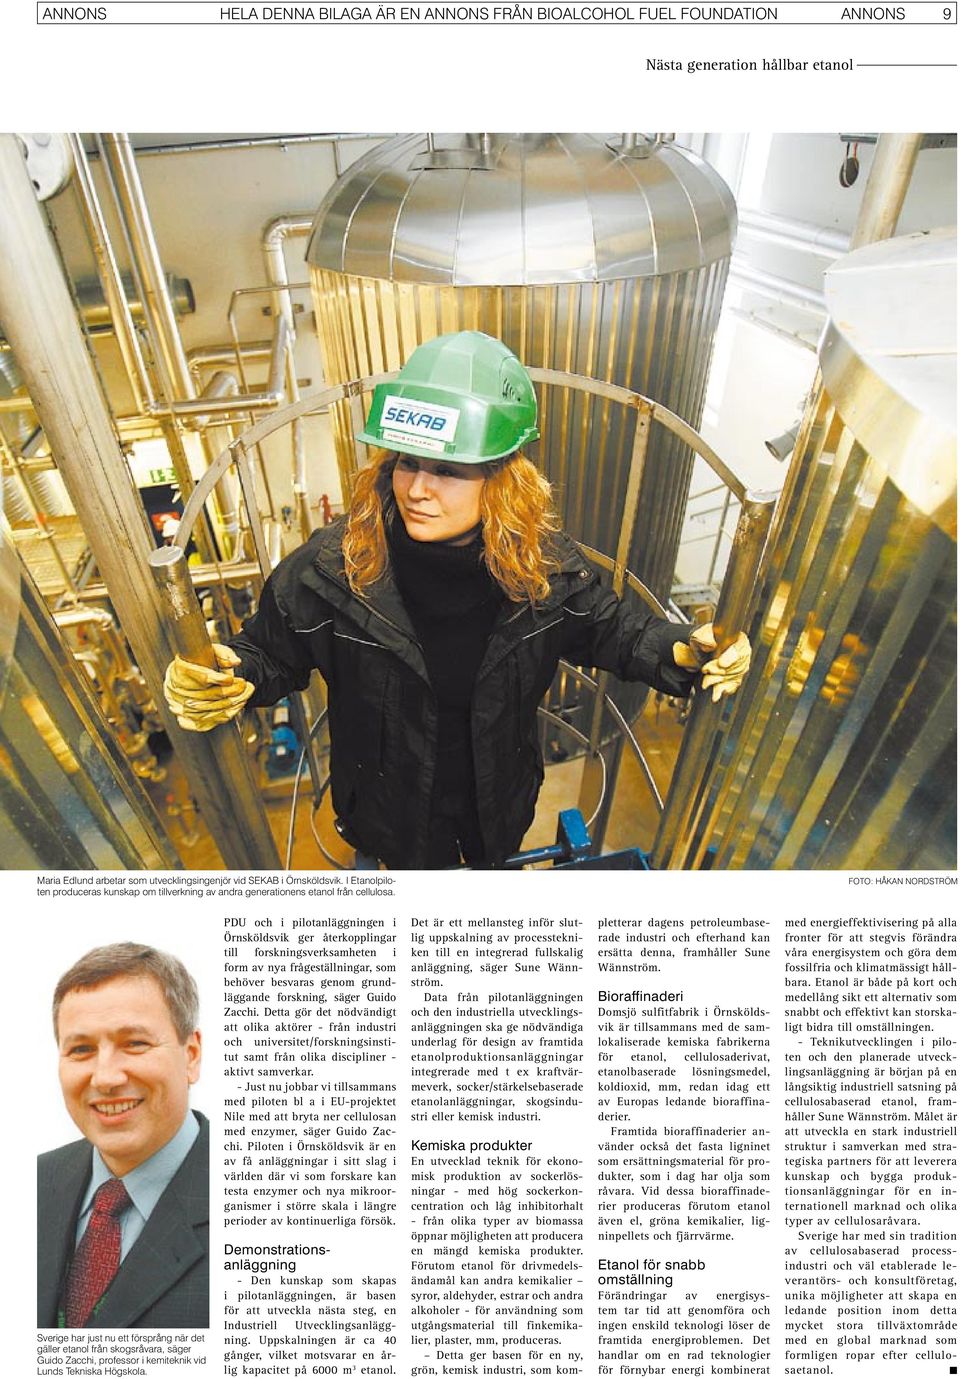 FOTO: HÅKAN NORDSTRÖM Sverige har just nu ett försprång när det gäller etanol från skogsråvara, säger Guido Zacchi, professor i kemiteknik vid Lunds Tekniska Högskola.